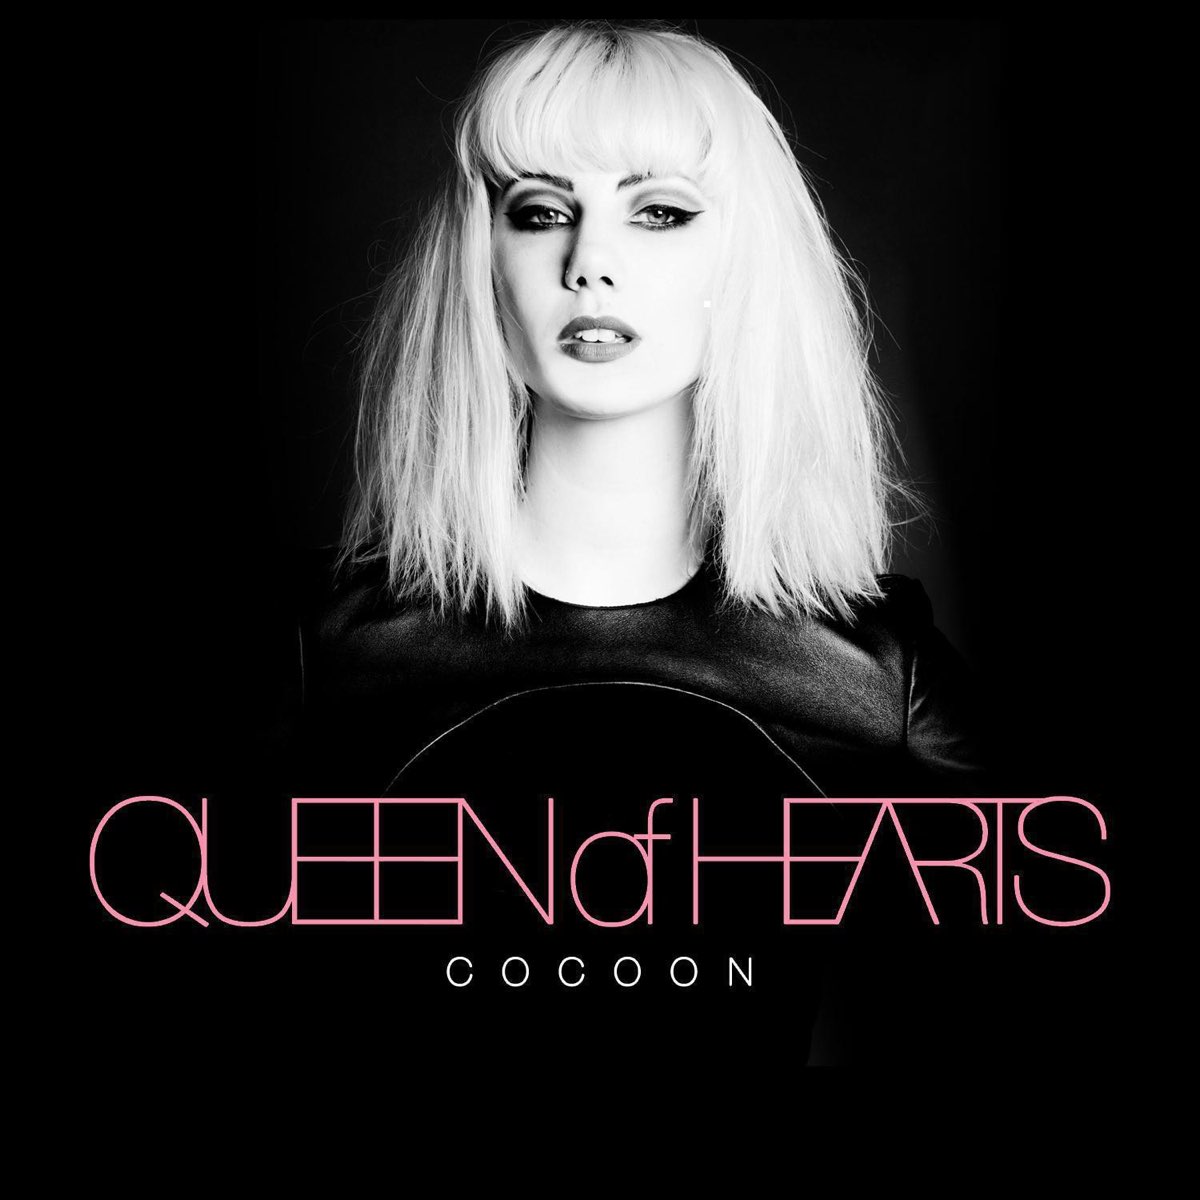 Queen of rain. Queen of Hearts Cocoon. Drug Queen. Queen of Hearts like a drug.